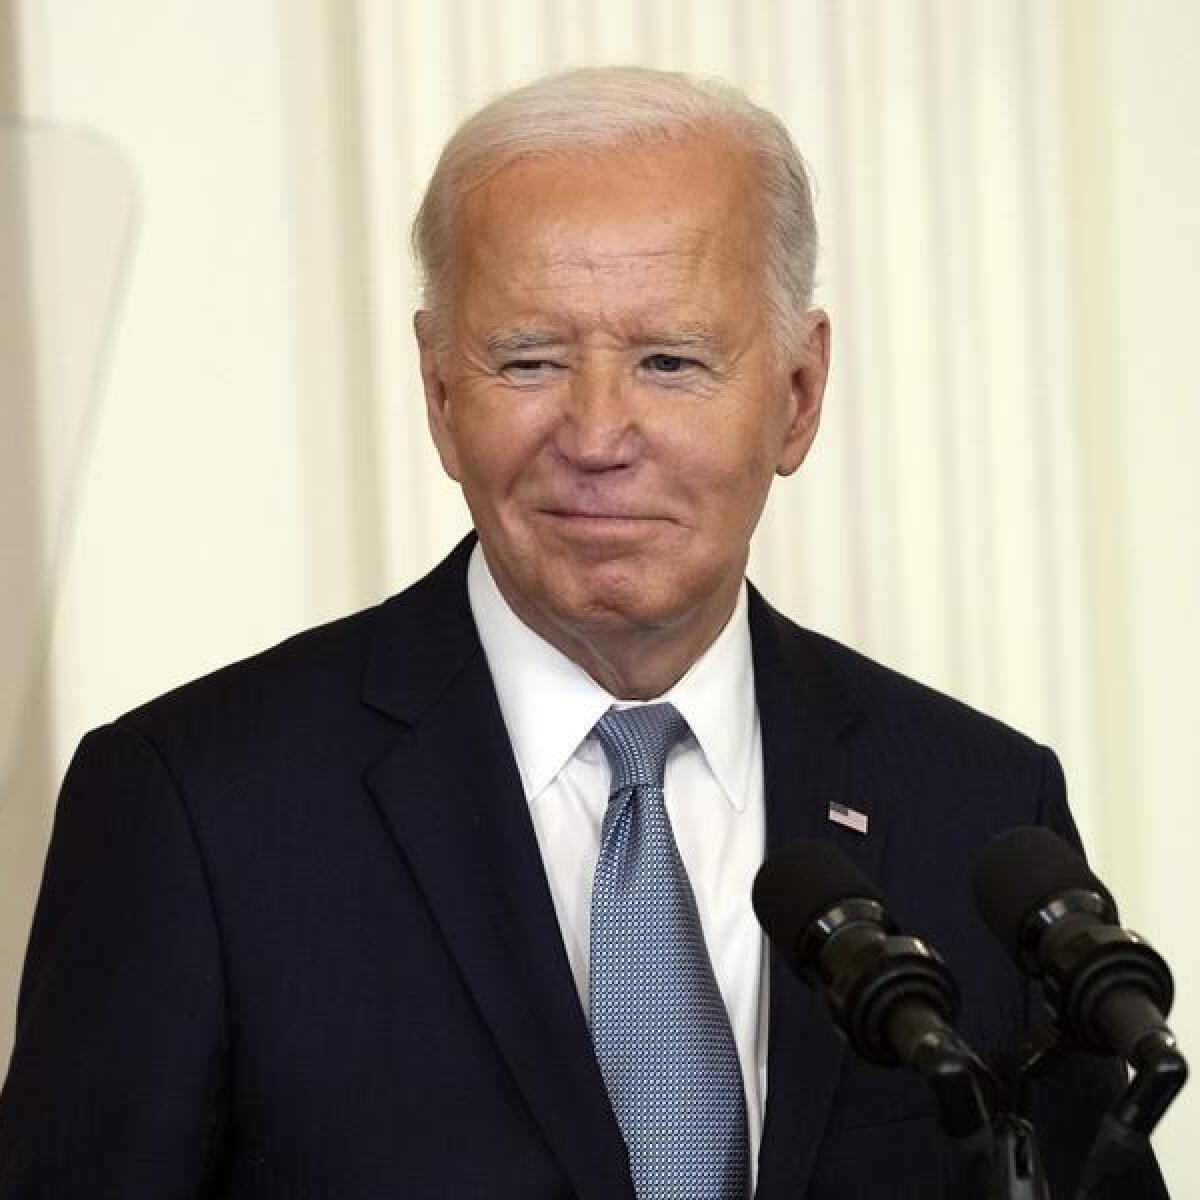 President Joe Biden at the White House